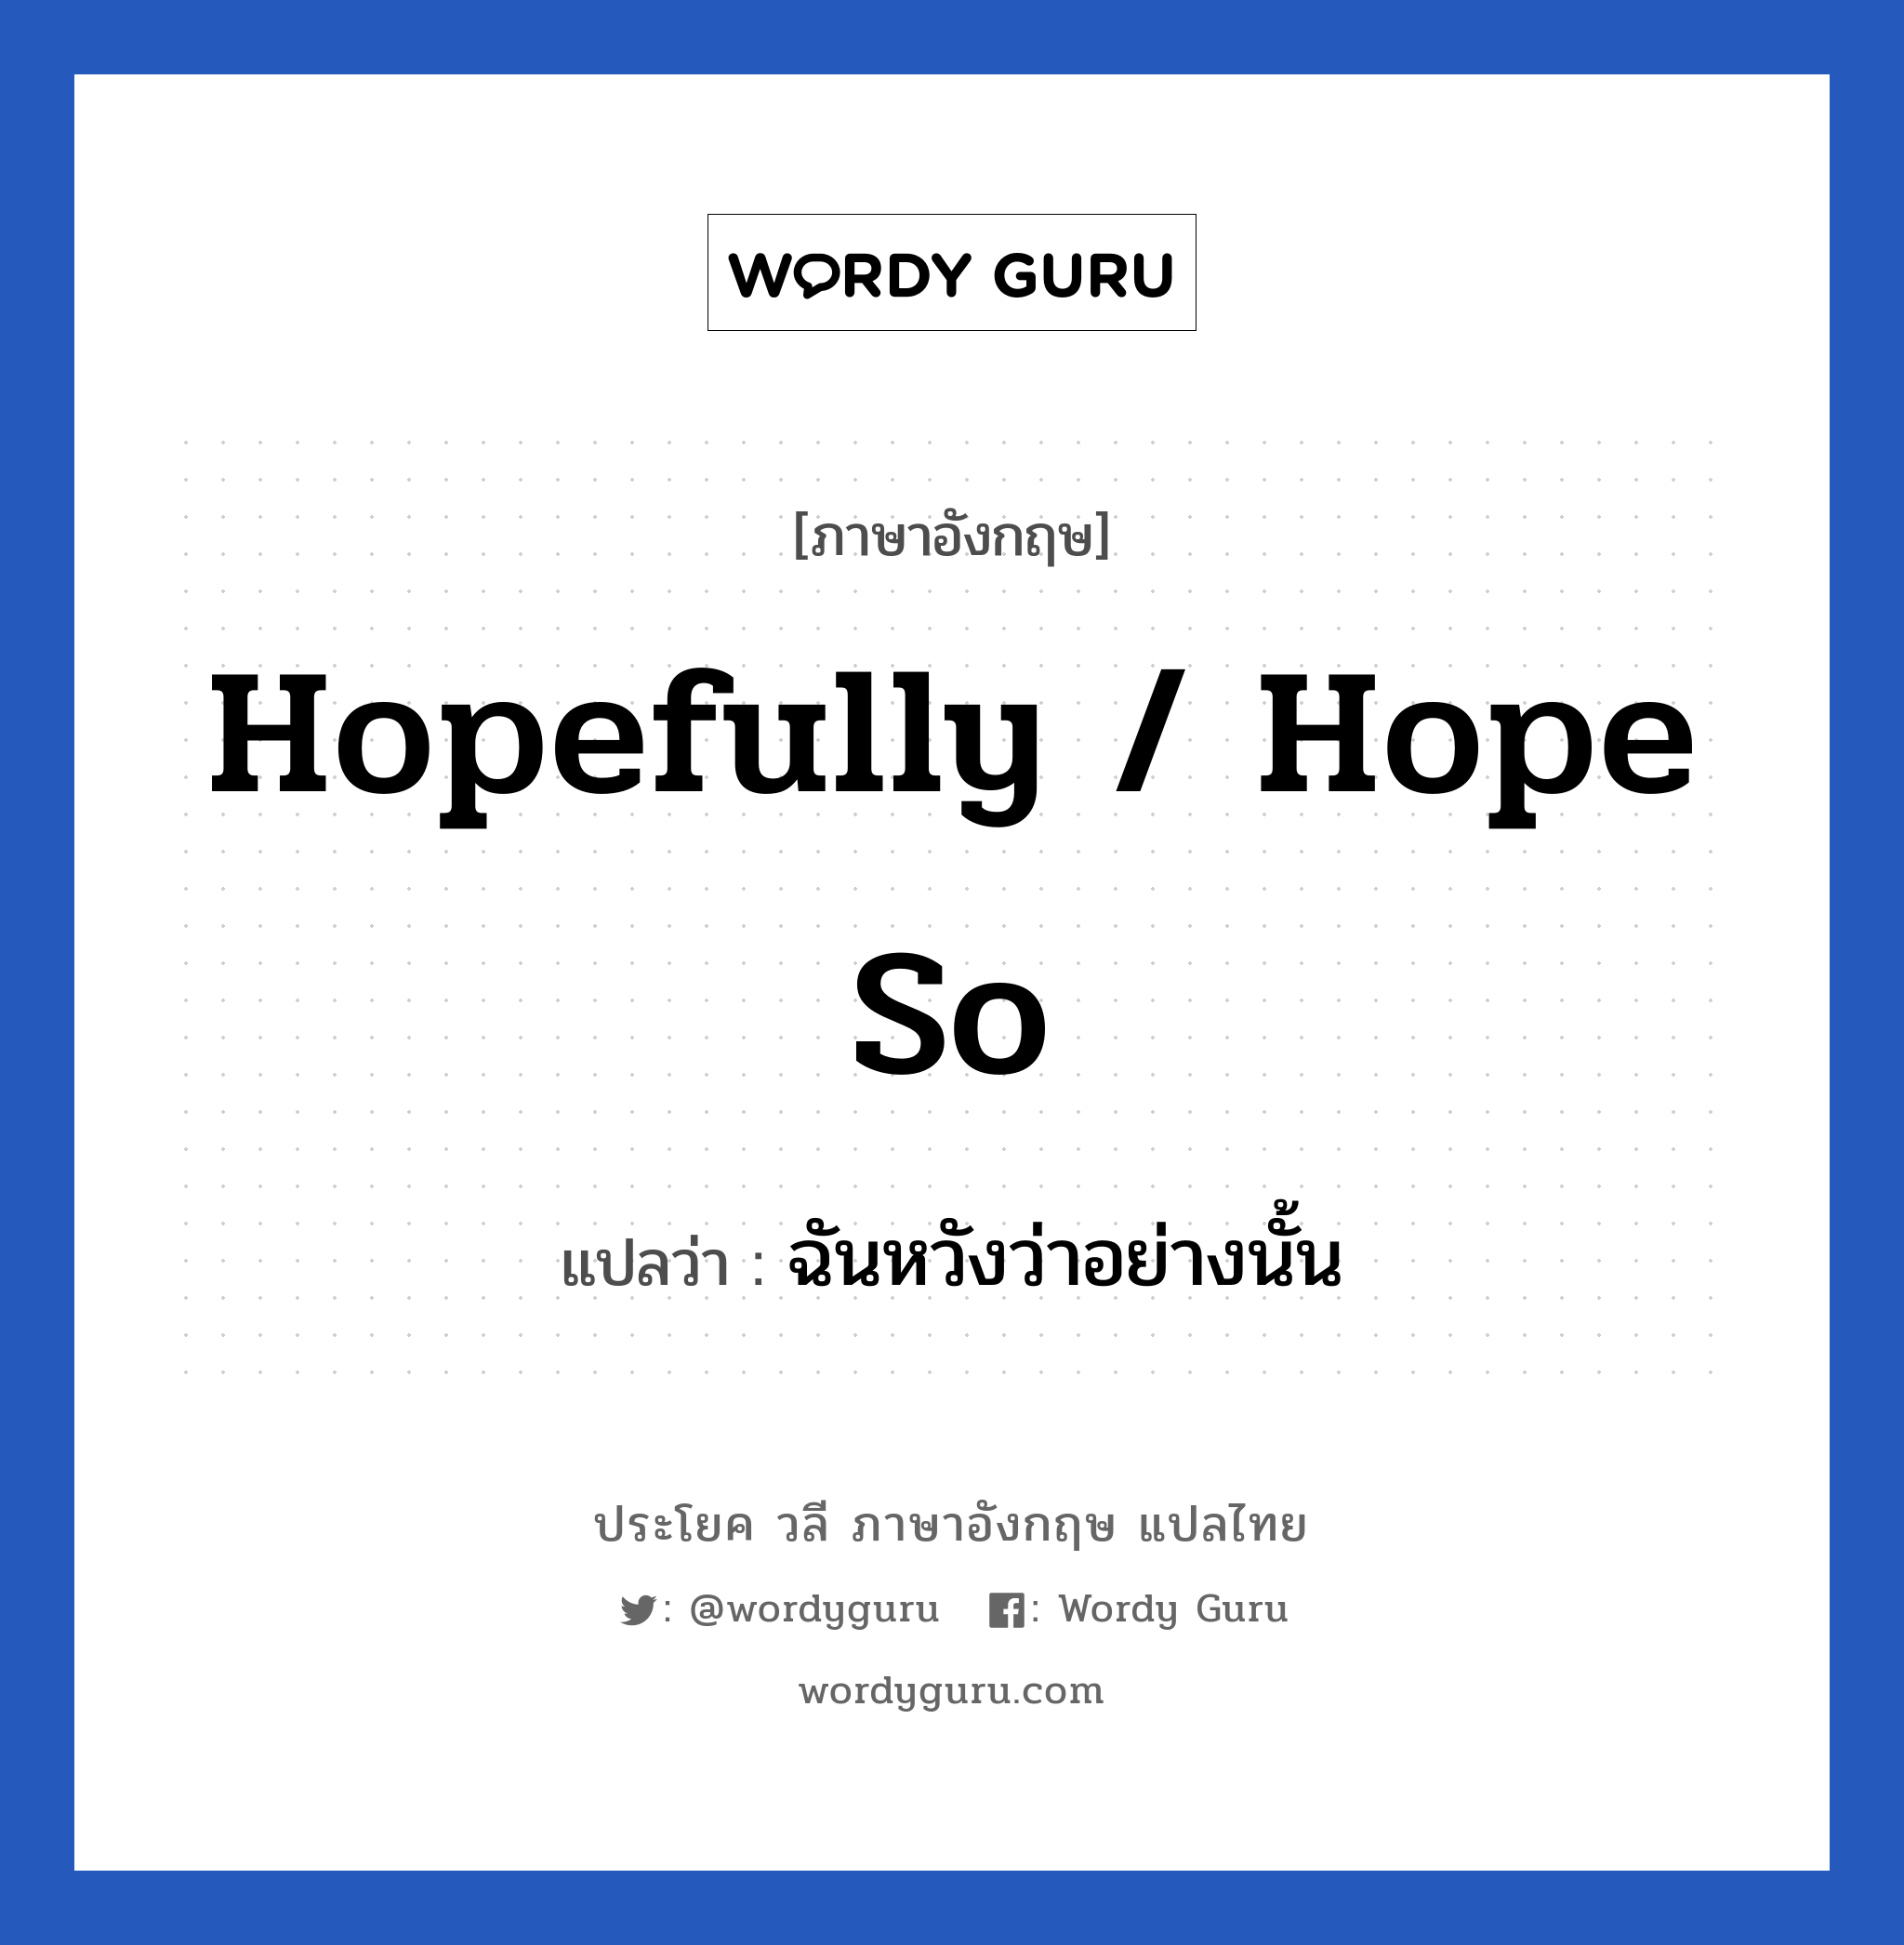 ฉันหวังว่าอย่างนั้น ภาษาอังกฤษ?, วลีภาษาอังกฤษ ฉันหวังว่าอย่างนั้น แปลว่า Hopefully / Hope so